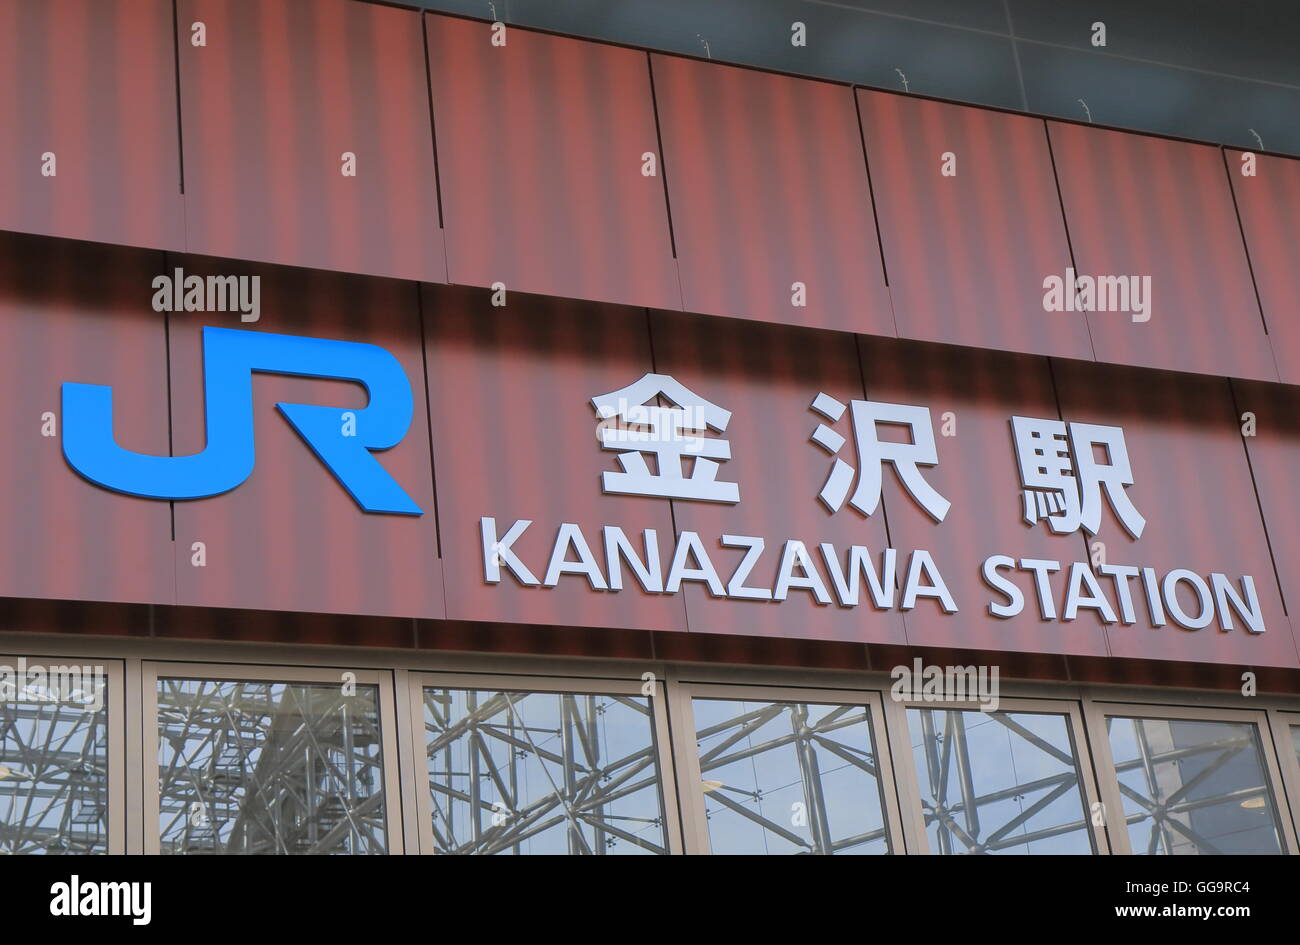 Kanazawa JR train station in Kanazawa Japan. Stock Photo